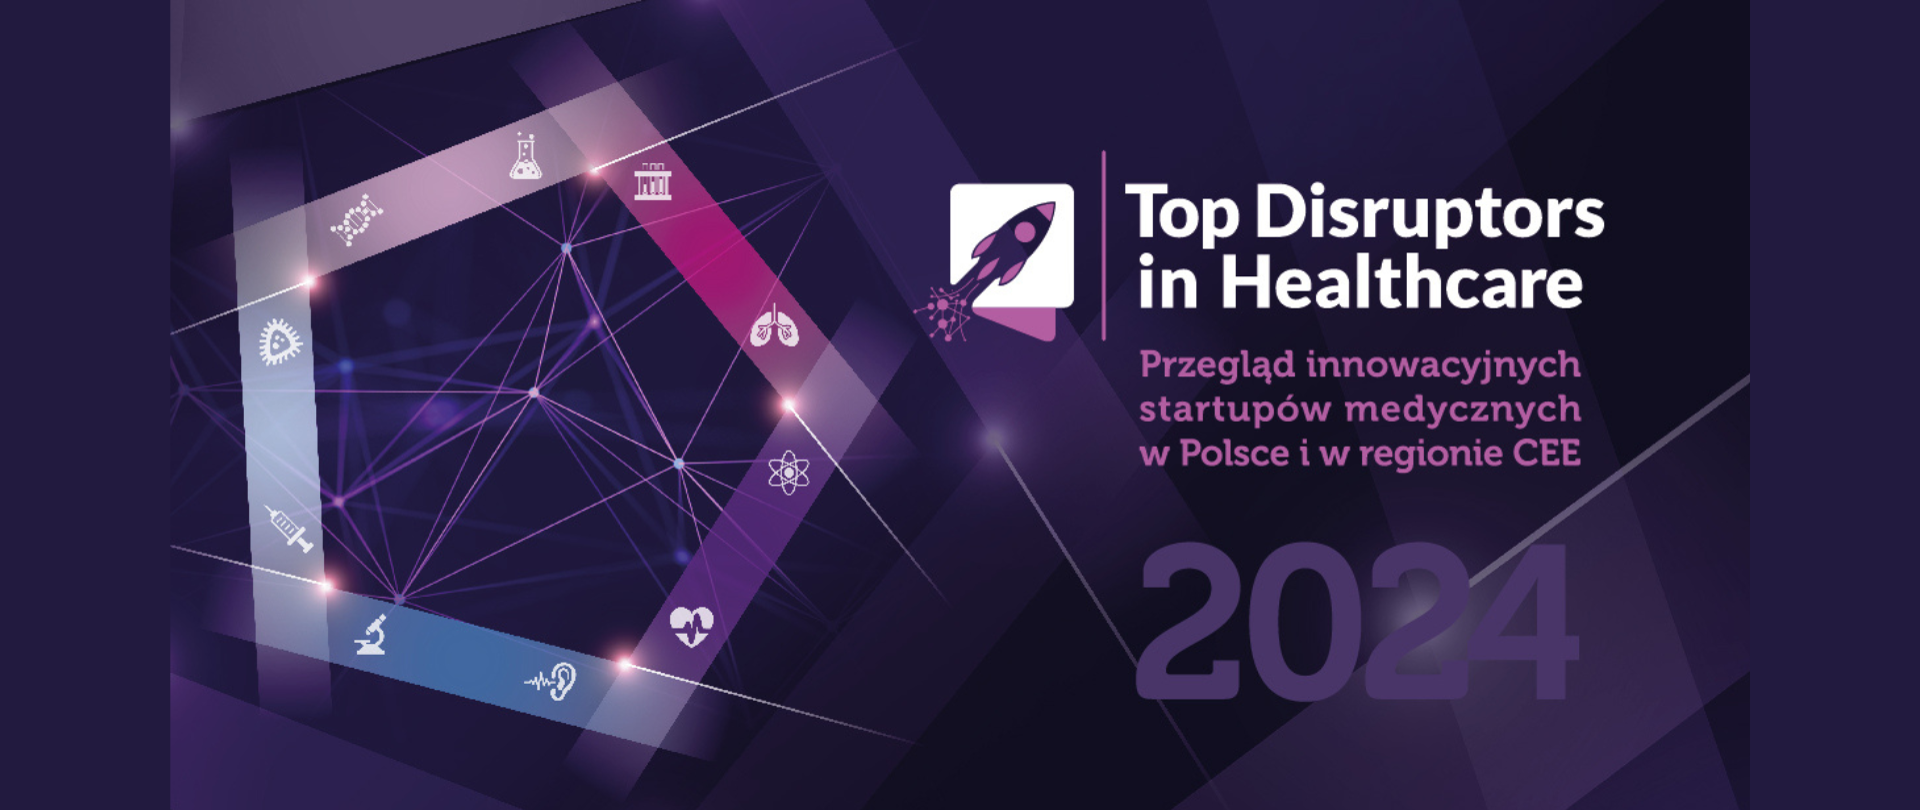 Baner Top in Disruptors in Healthcare, przegląd innowacyjnych startupów medycznych w Polsce i w regionie CEE